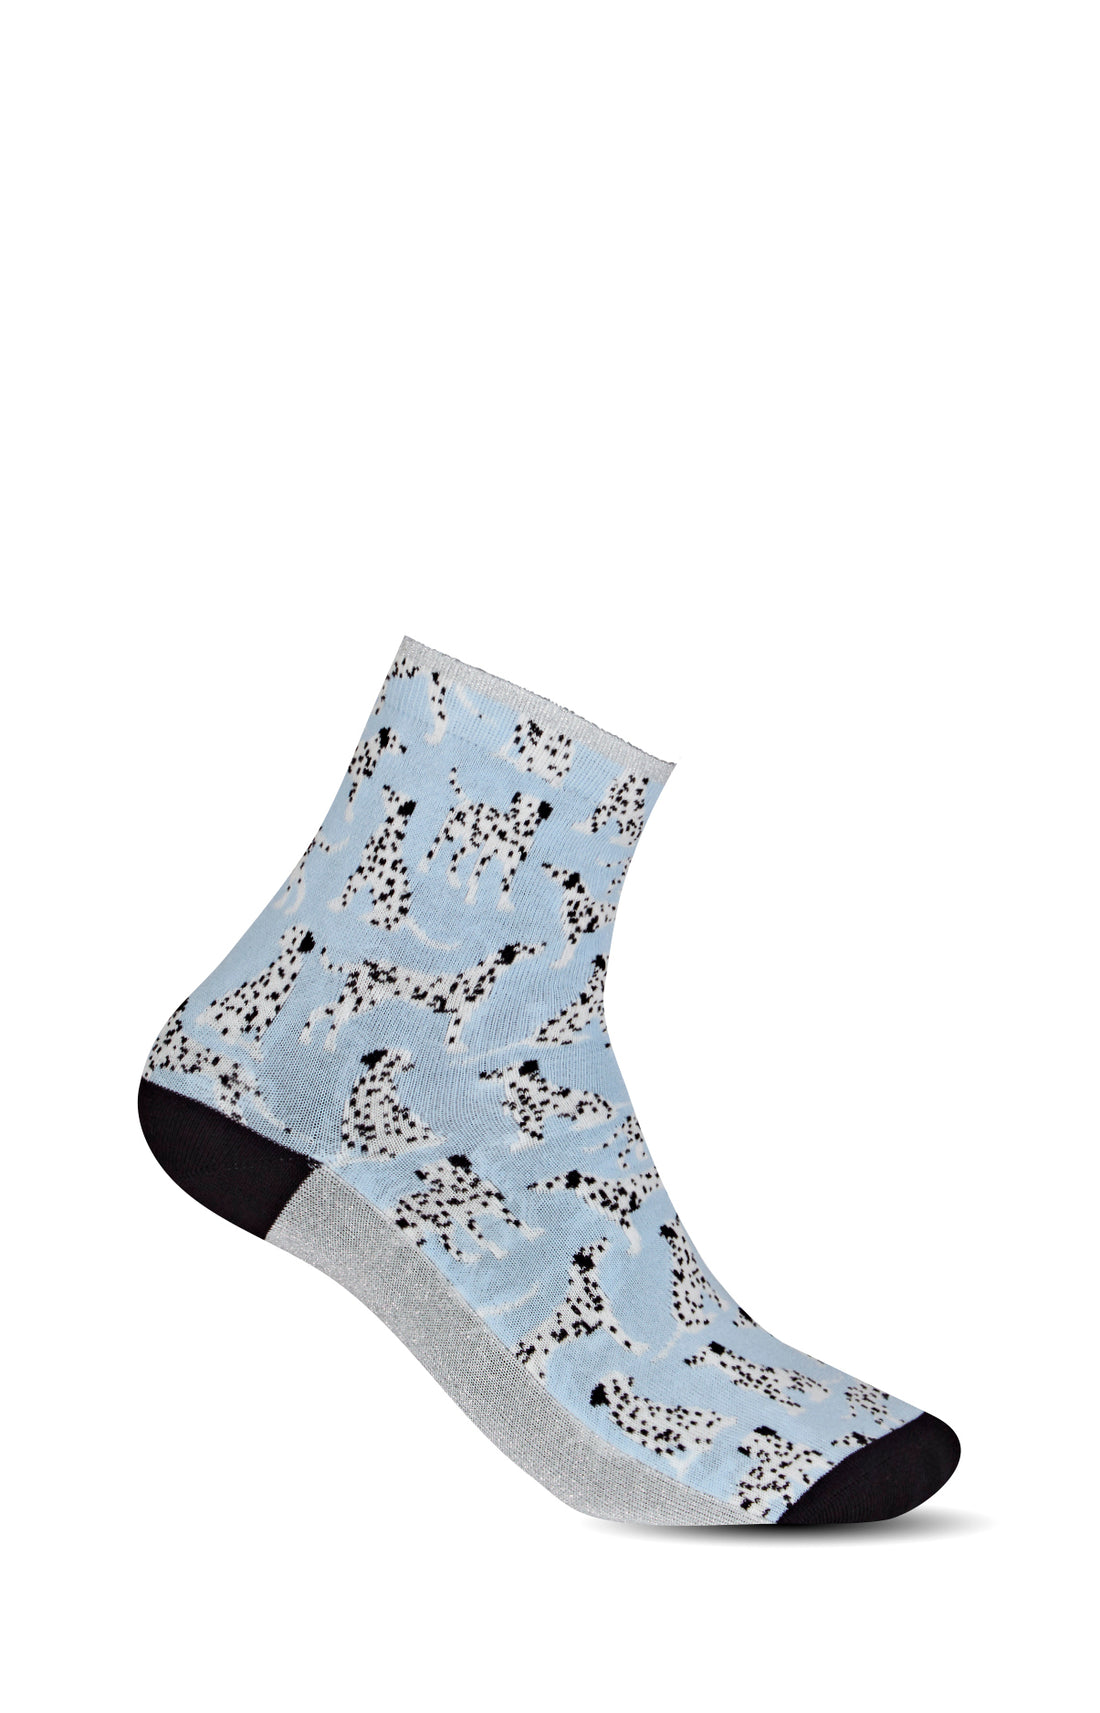 Dalmatian Socks - Sky